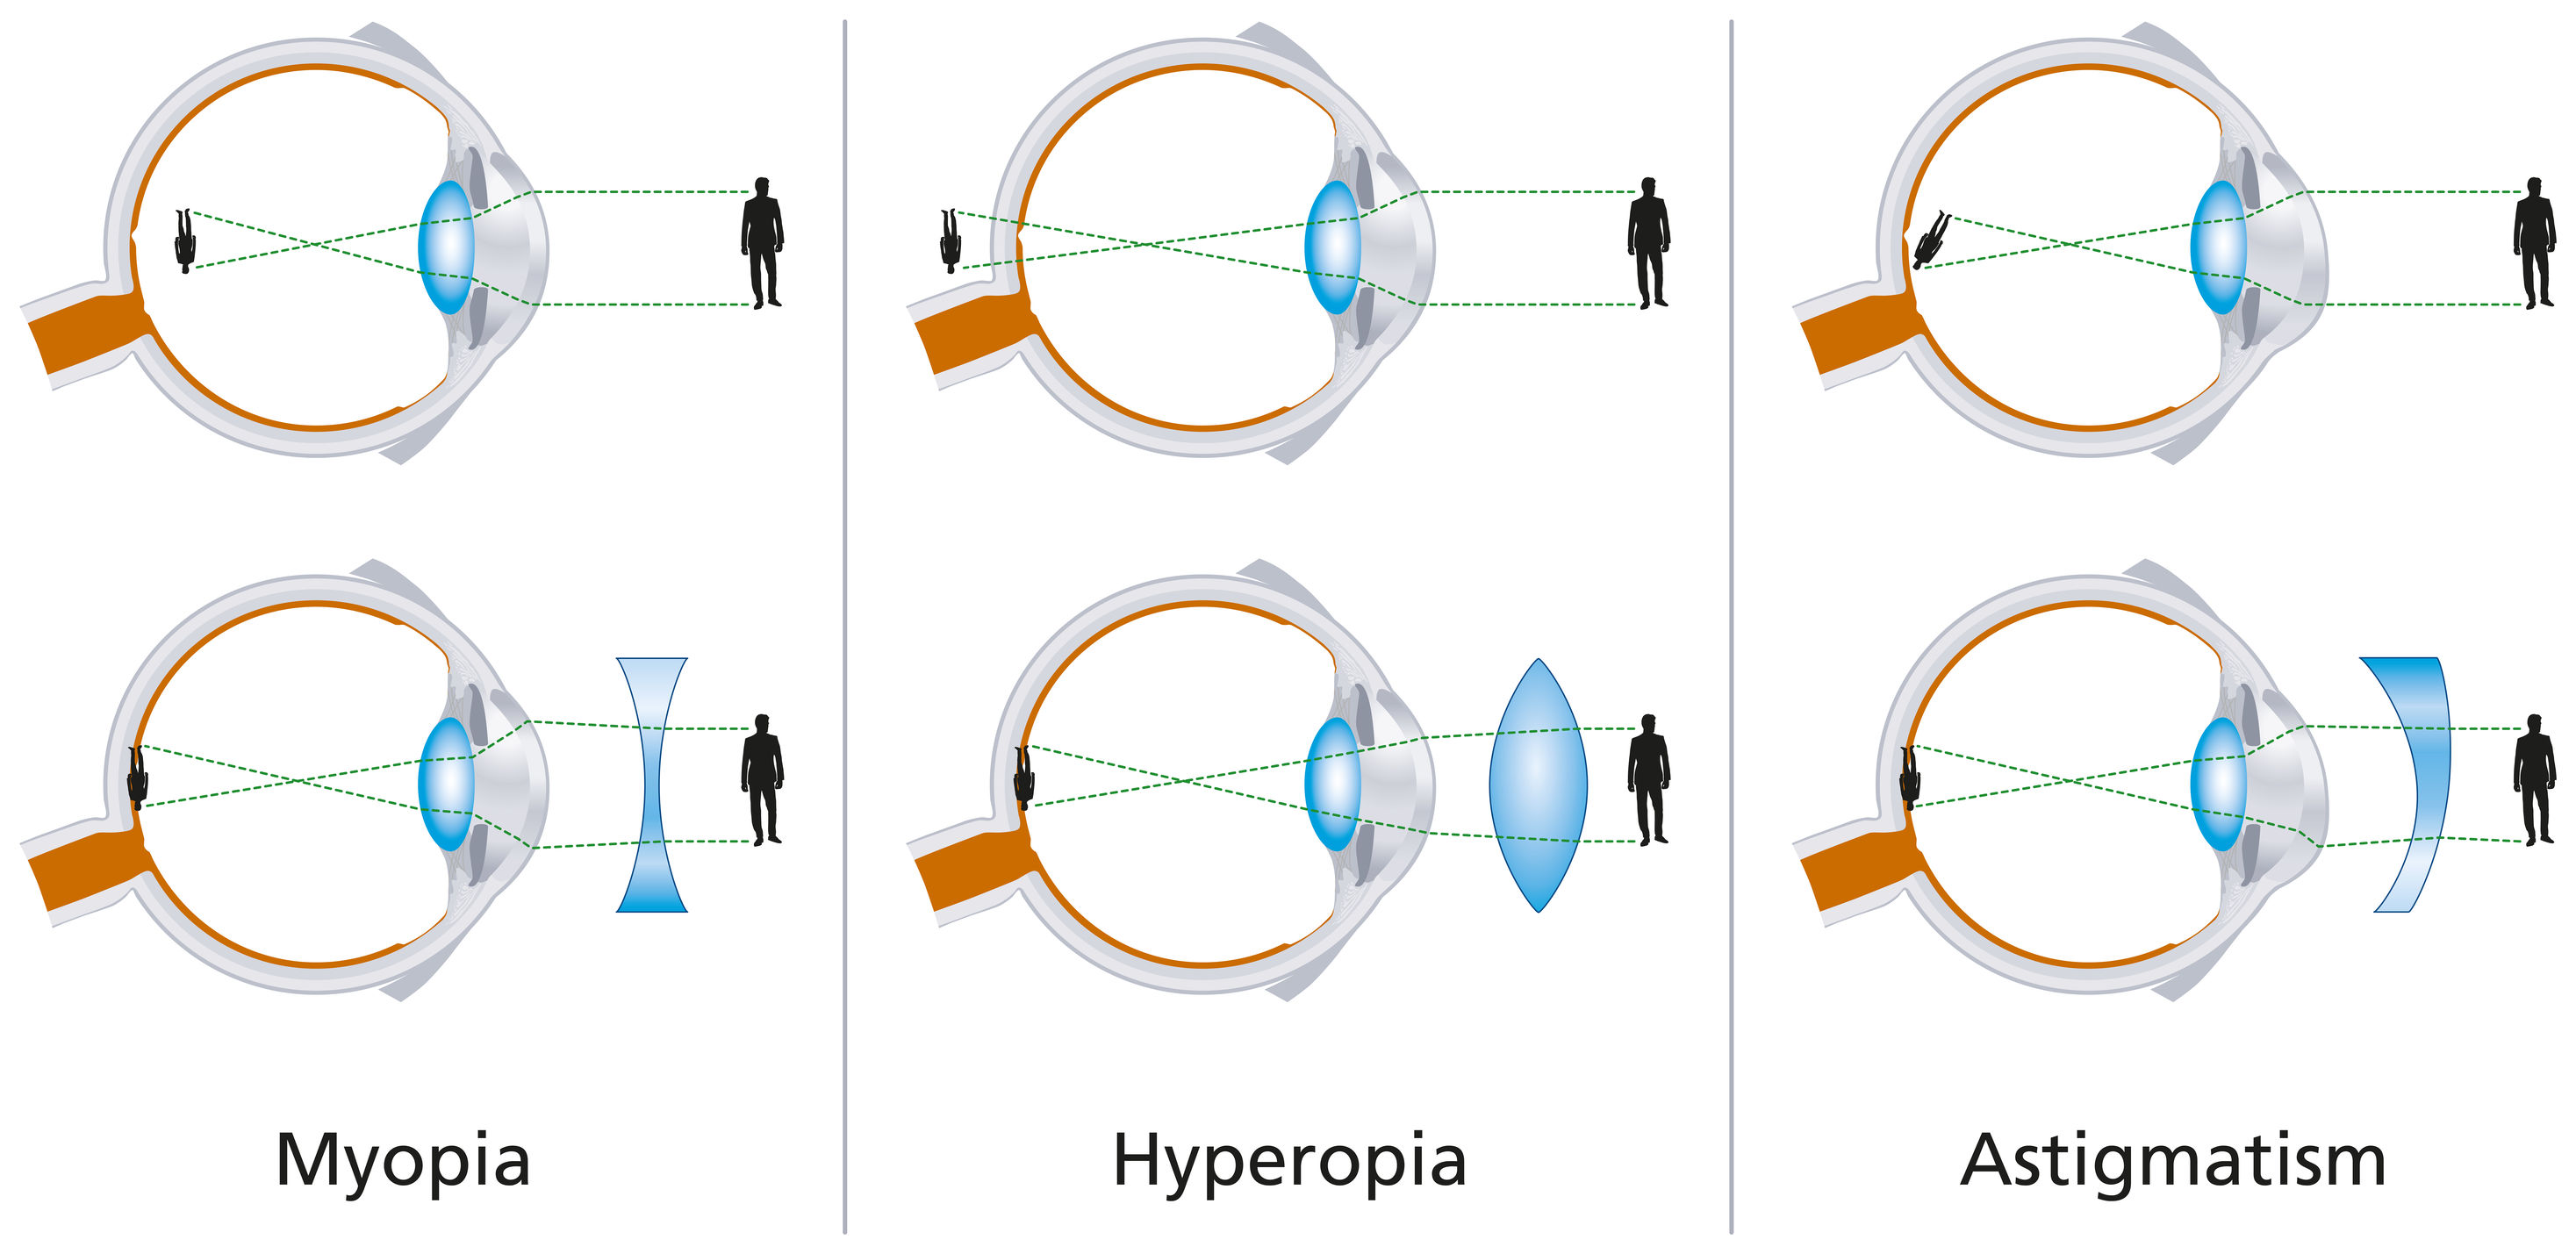 Készülékek strabismus myopia kezelésére - Myopie astigmatismus ou